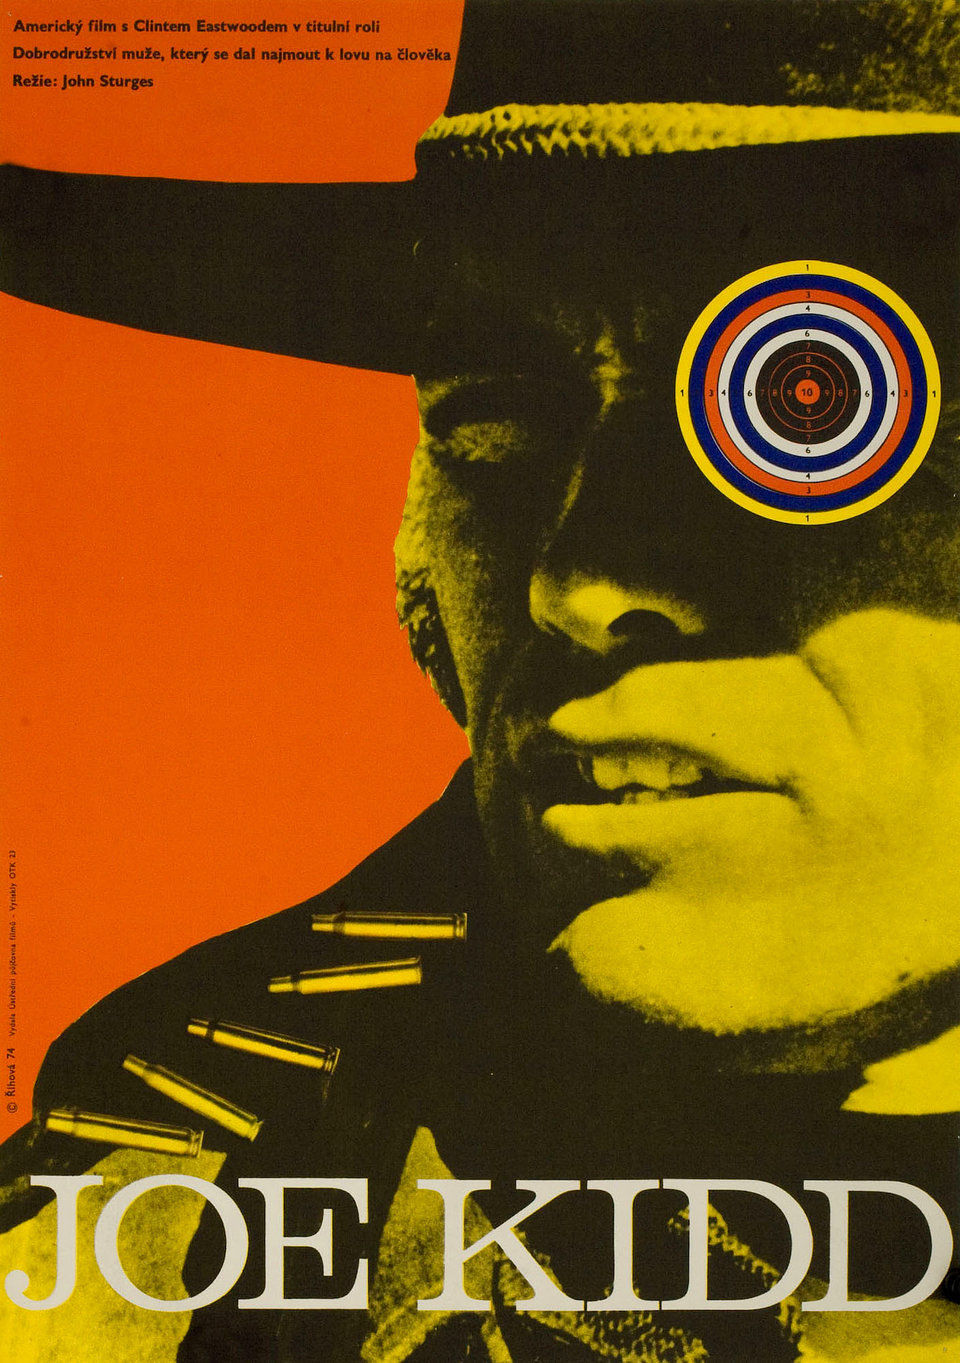 Joe Kidd 1974 Original Czech Republic Movie Poster